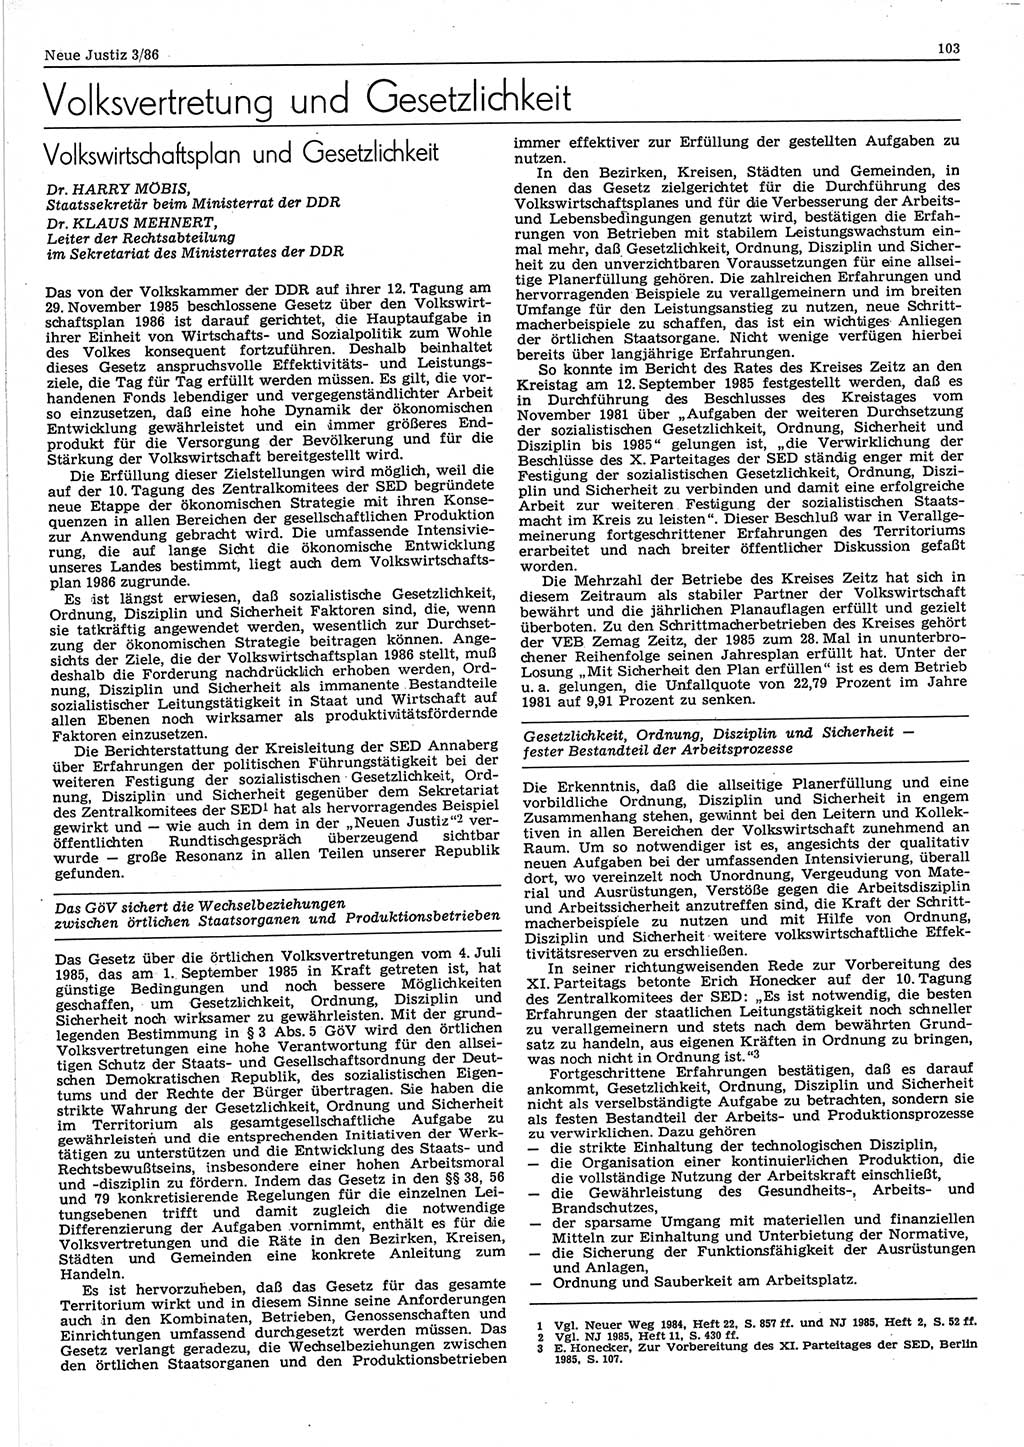 Neue Justiz (NJ), Zeitschrift für sozialistisches Recht und Gesetzlichkeit [Deutsche Demokratische Republik (DDR)], 40. Jahrgang 1986, Seite 103 (NJ DDR 1986, S. 103)